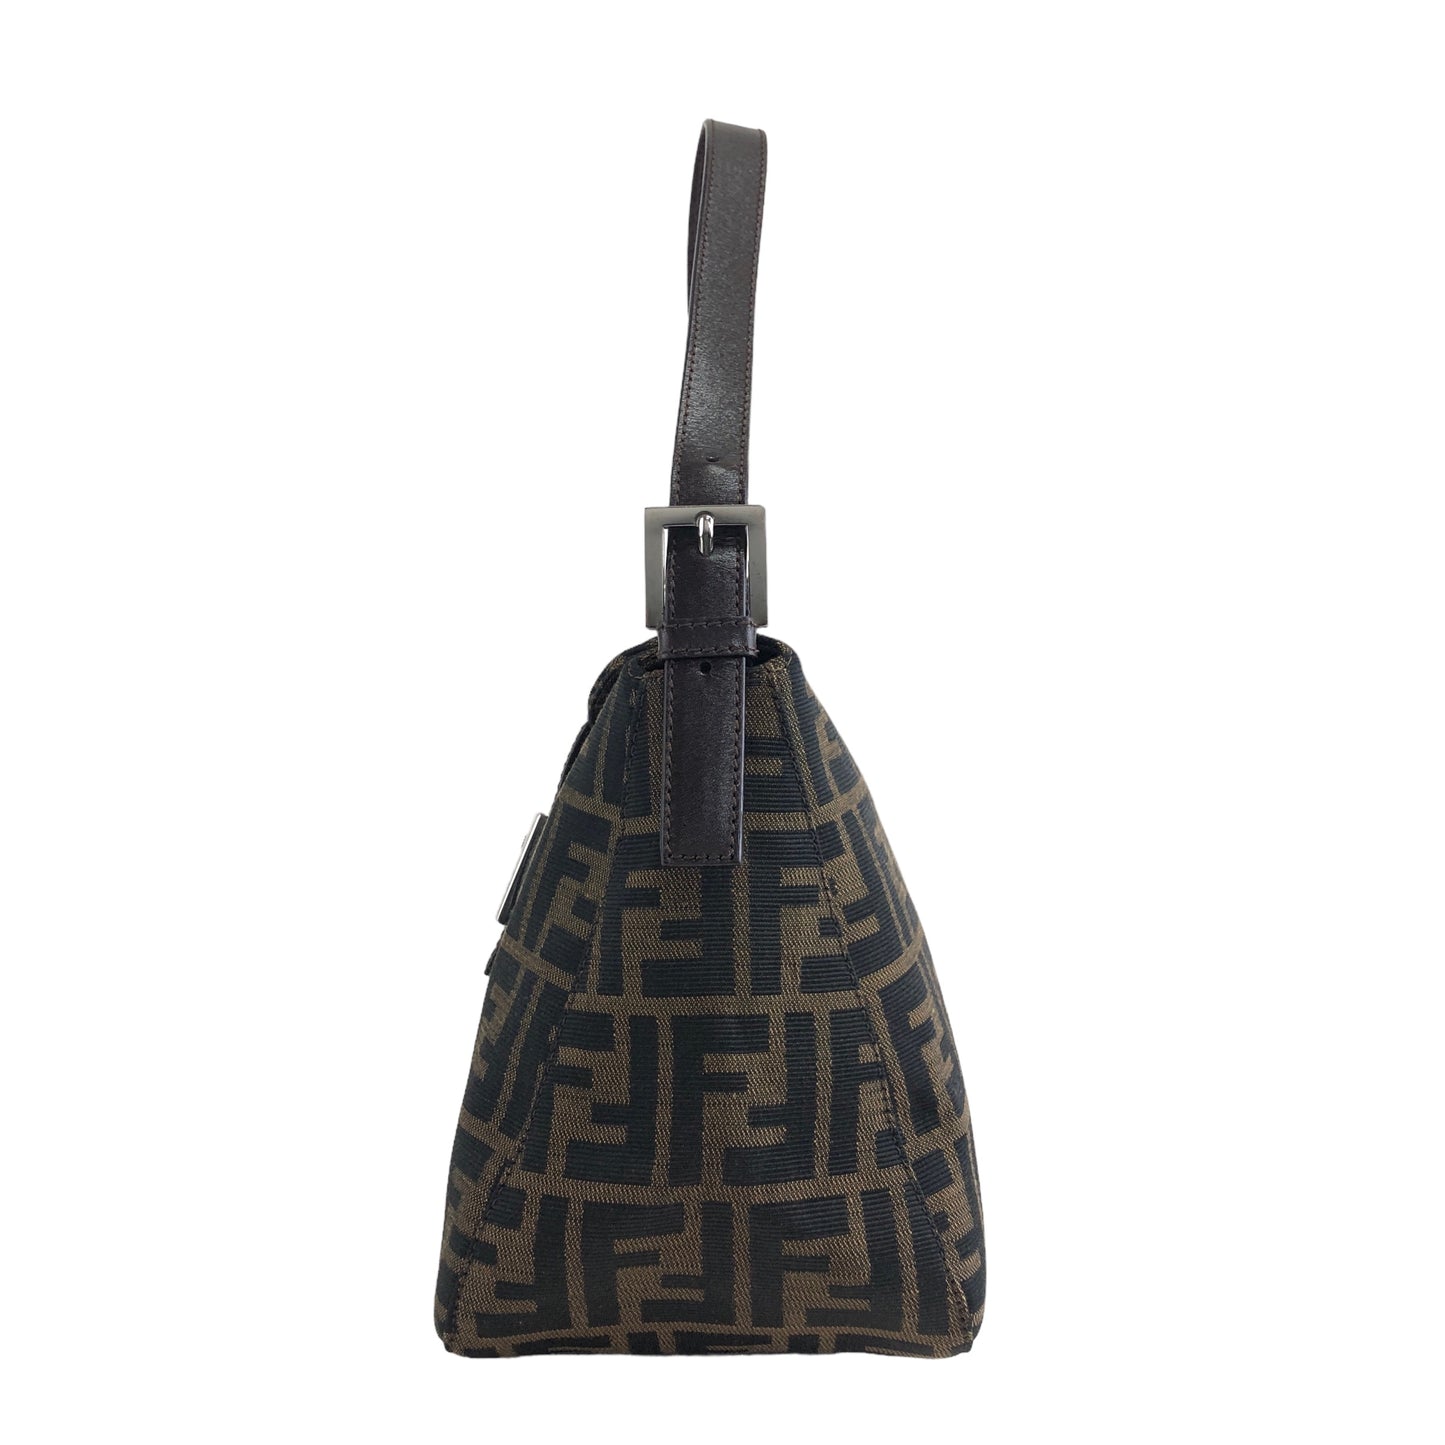 FENDI Zucca Jacquard Leather Shoulder bag Hobobag Brown Vintage a23v5e